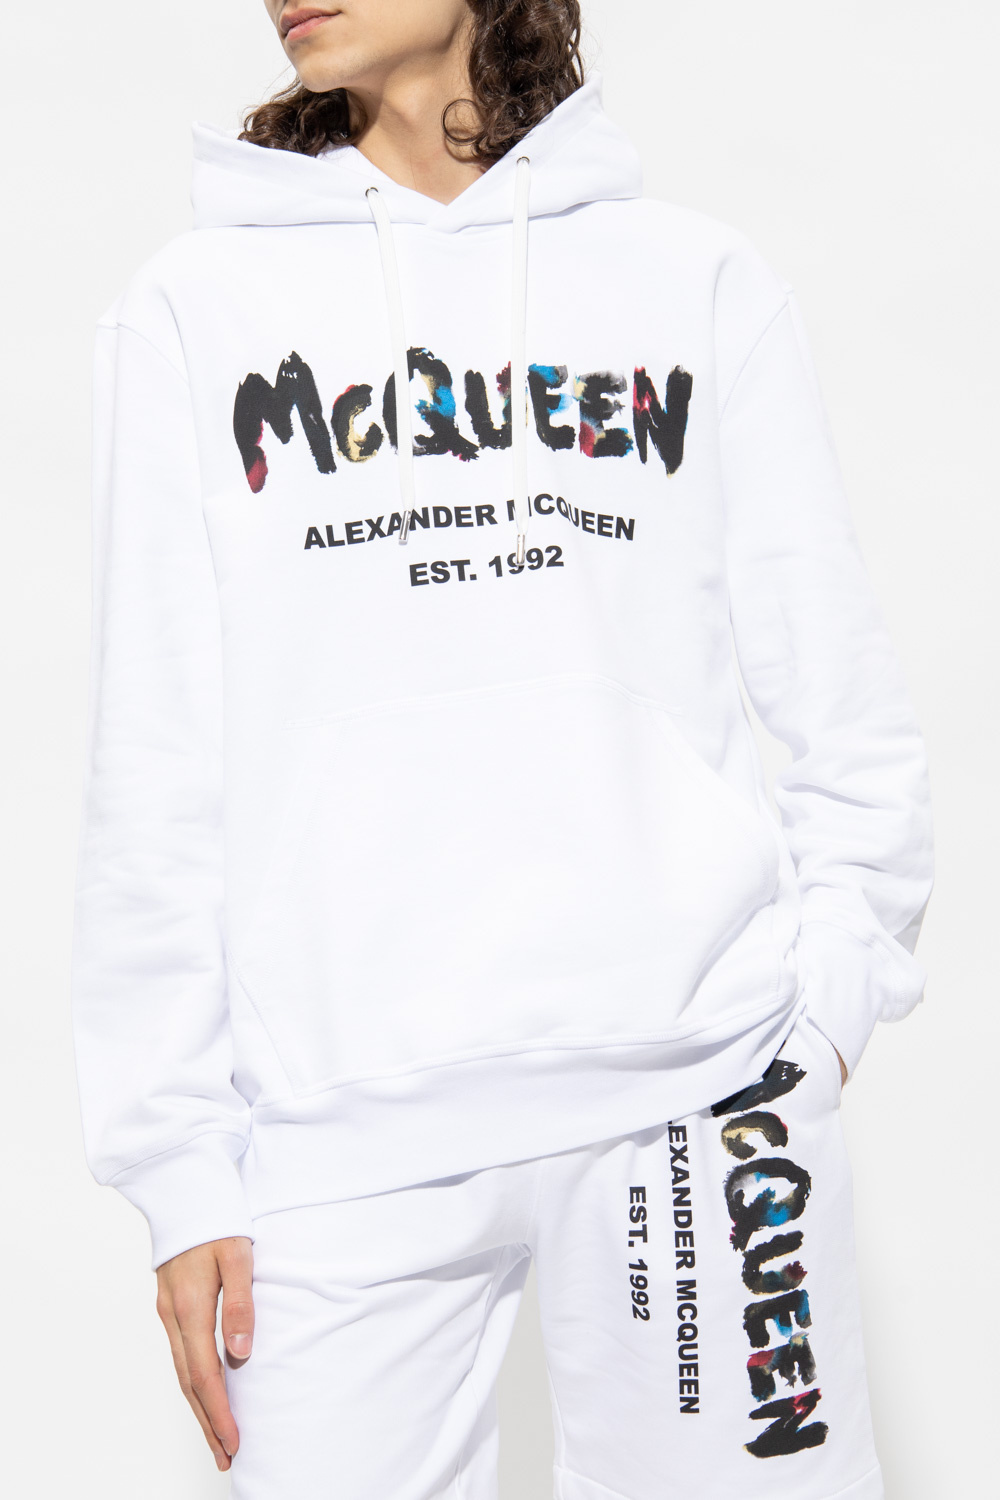 Alexander McQueen Alexander McQueen ribbed knit buttoned maxi dress